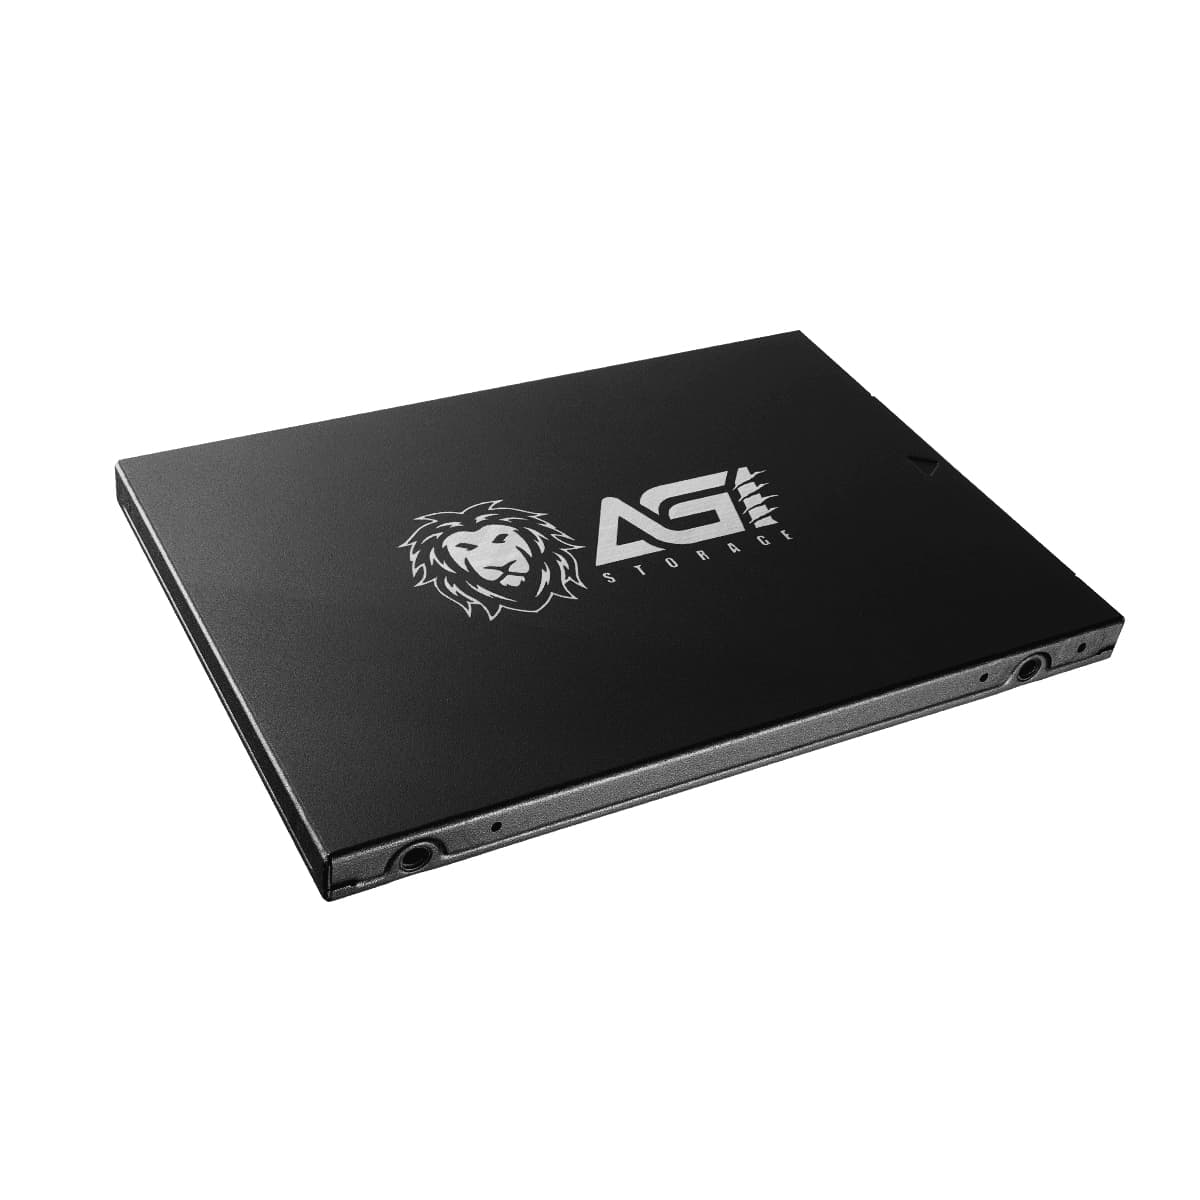 AGI 256GB 高性能パフォーマンスの2.5インチSATA Ⅲ SSD